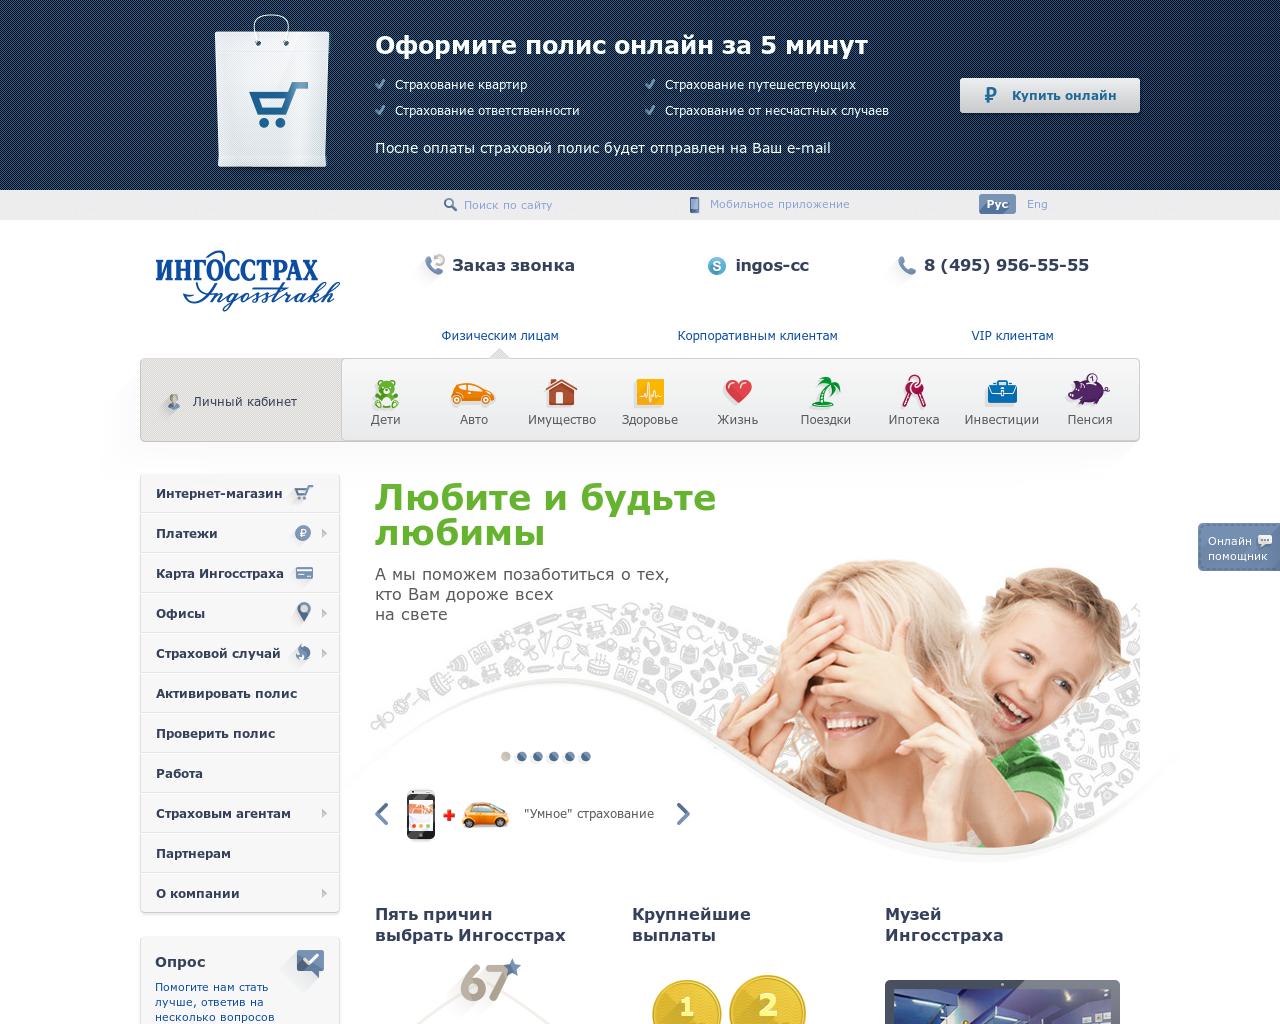    www.tven.ru